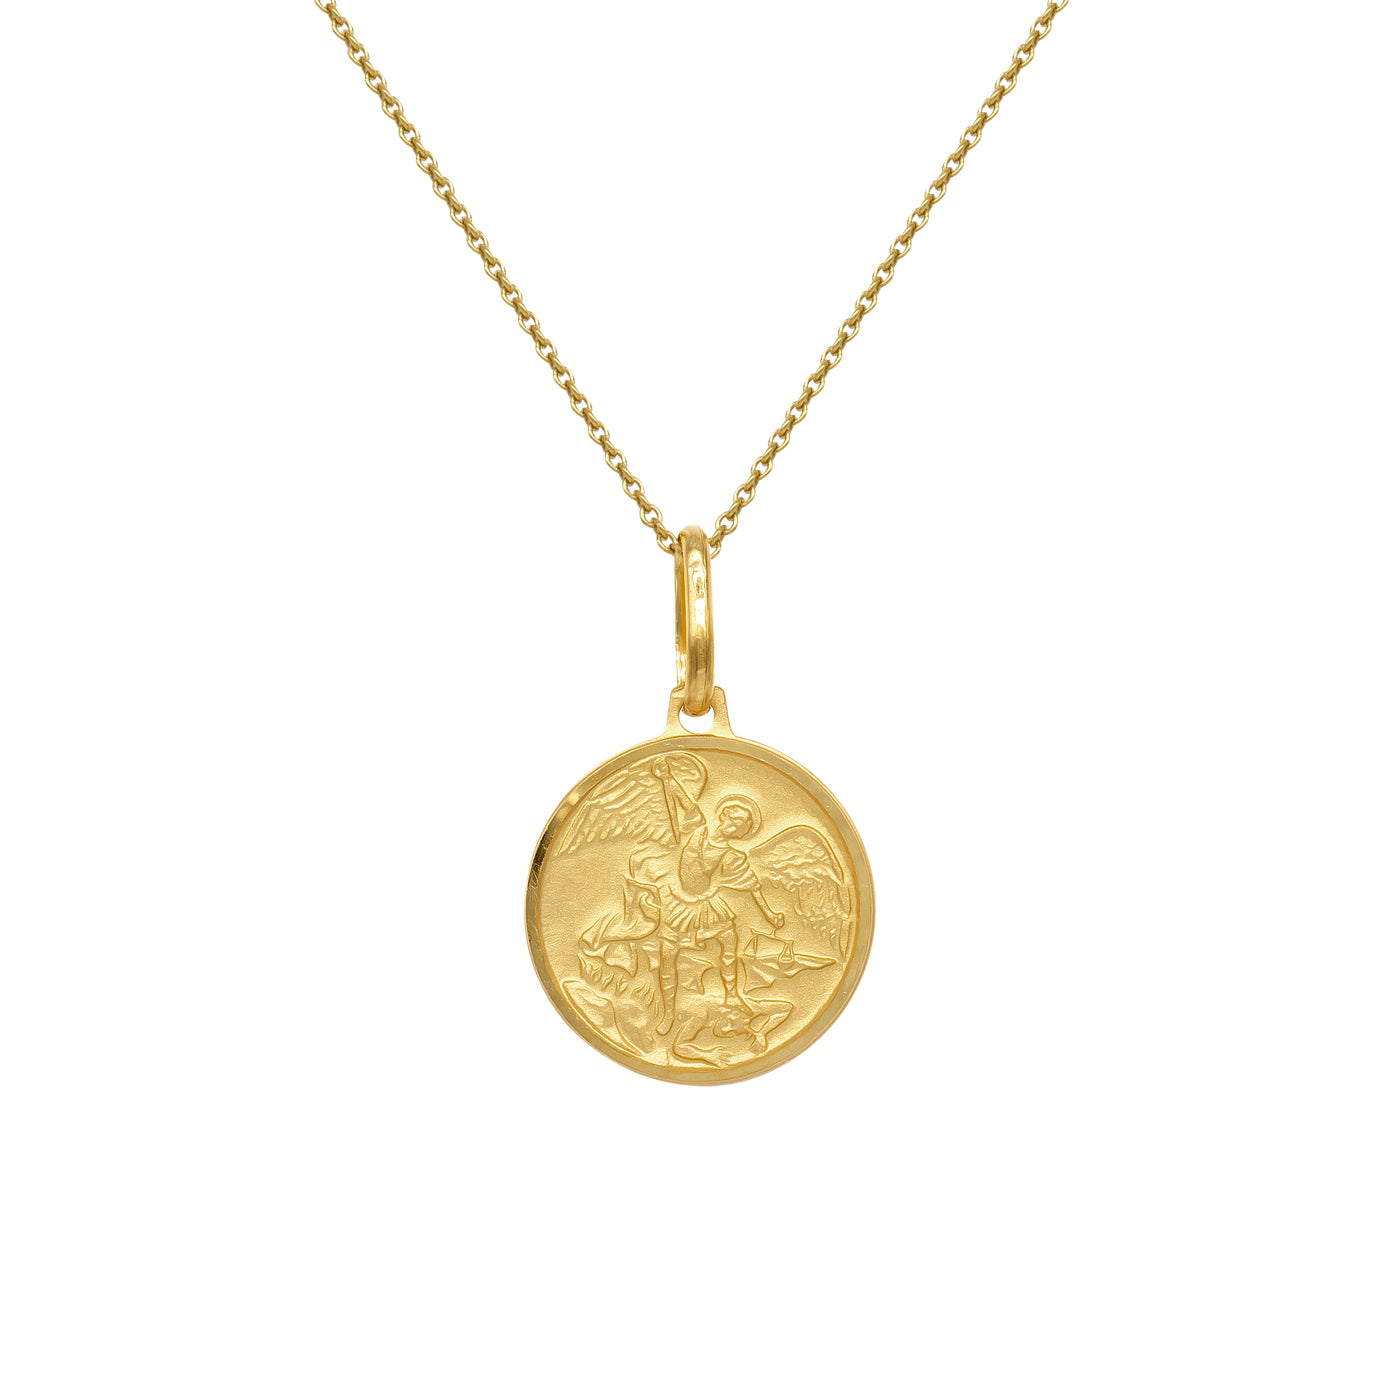 Médaille Saint Michel